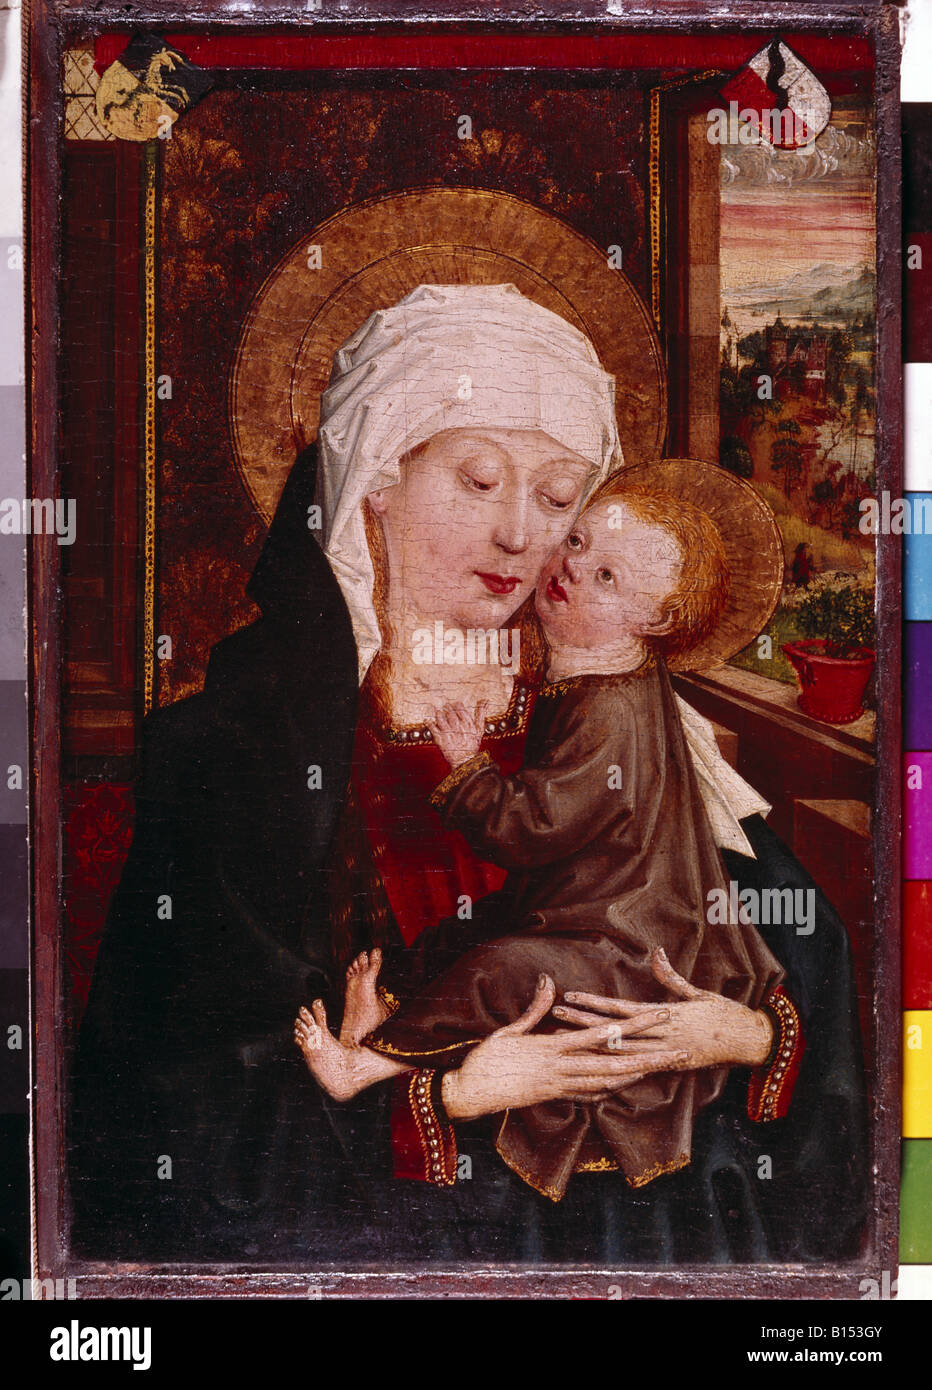 Belle arti, Beham, Bartel (1502 - 1540), pittura, "Madonna con Bambino", Germanico Museo Nazionale, Norimberga, Germania, artista del diritto d'autore non deve essere cancellata Foto Stock